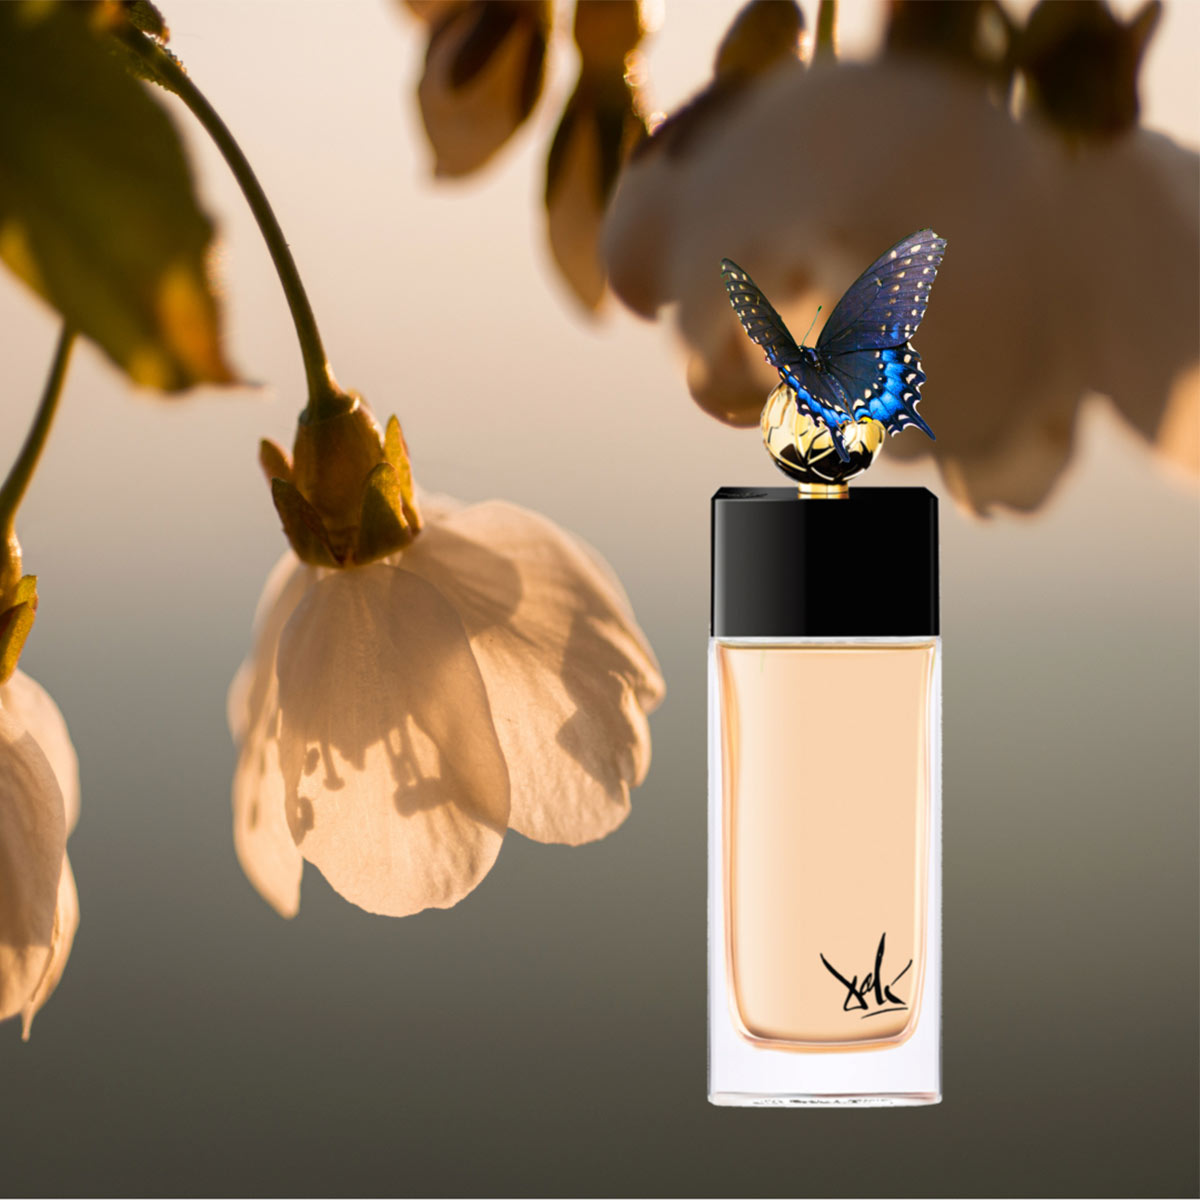 Voyage Onirique du Papillon De Vie "The Butterfly" - Dali Haute Parfumerie - EDP 100ml